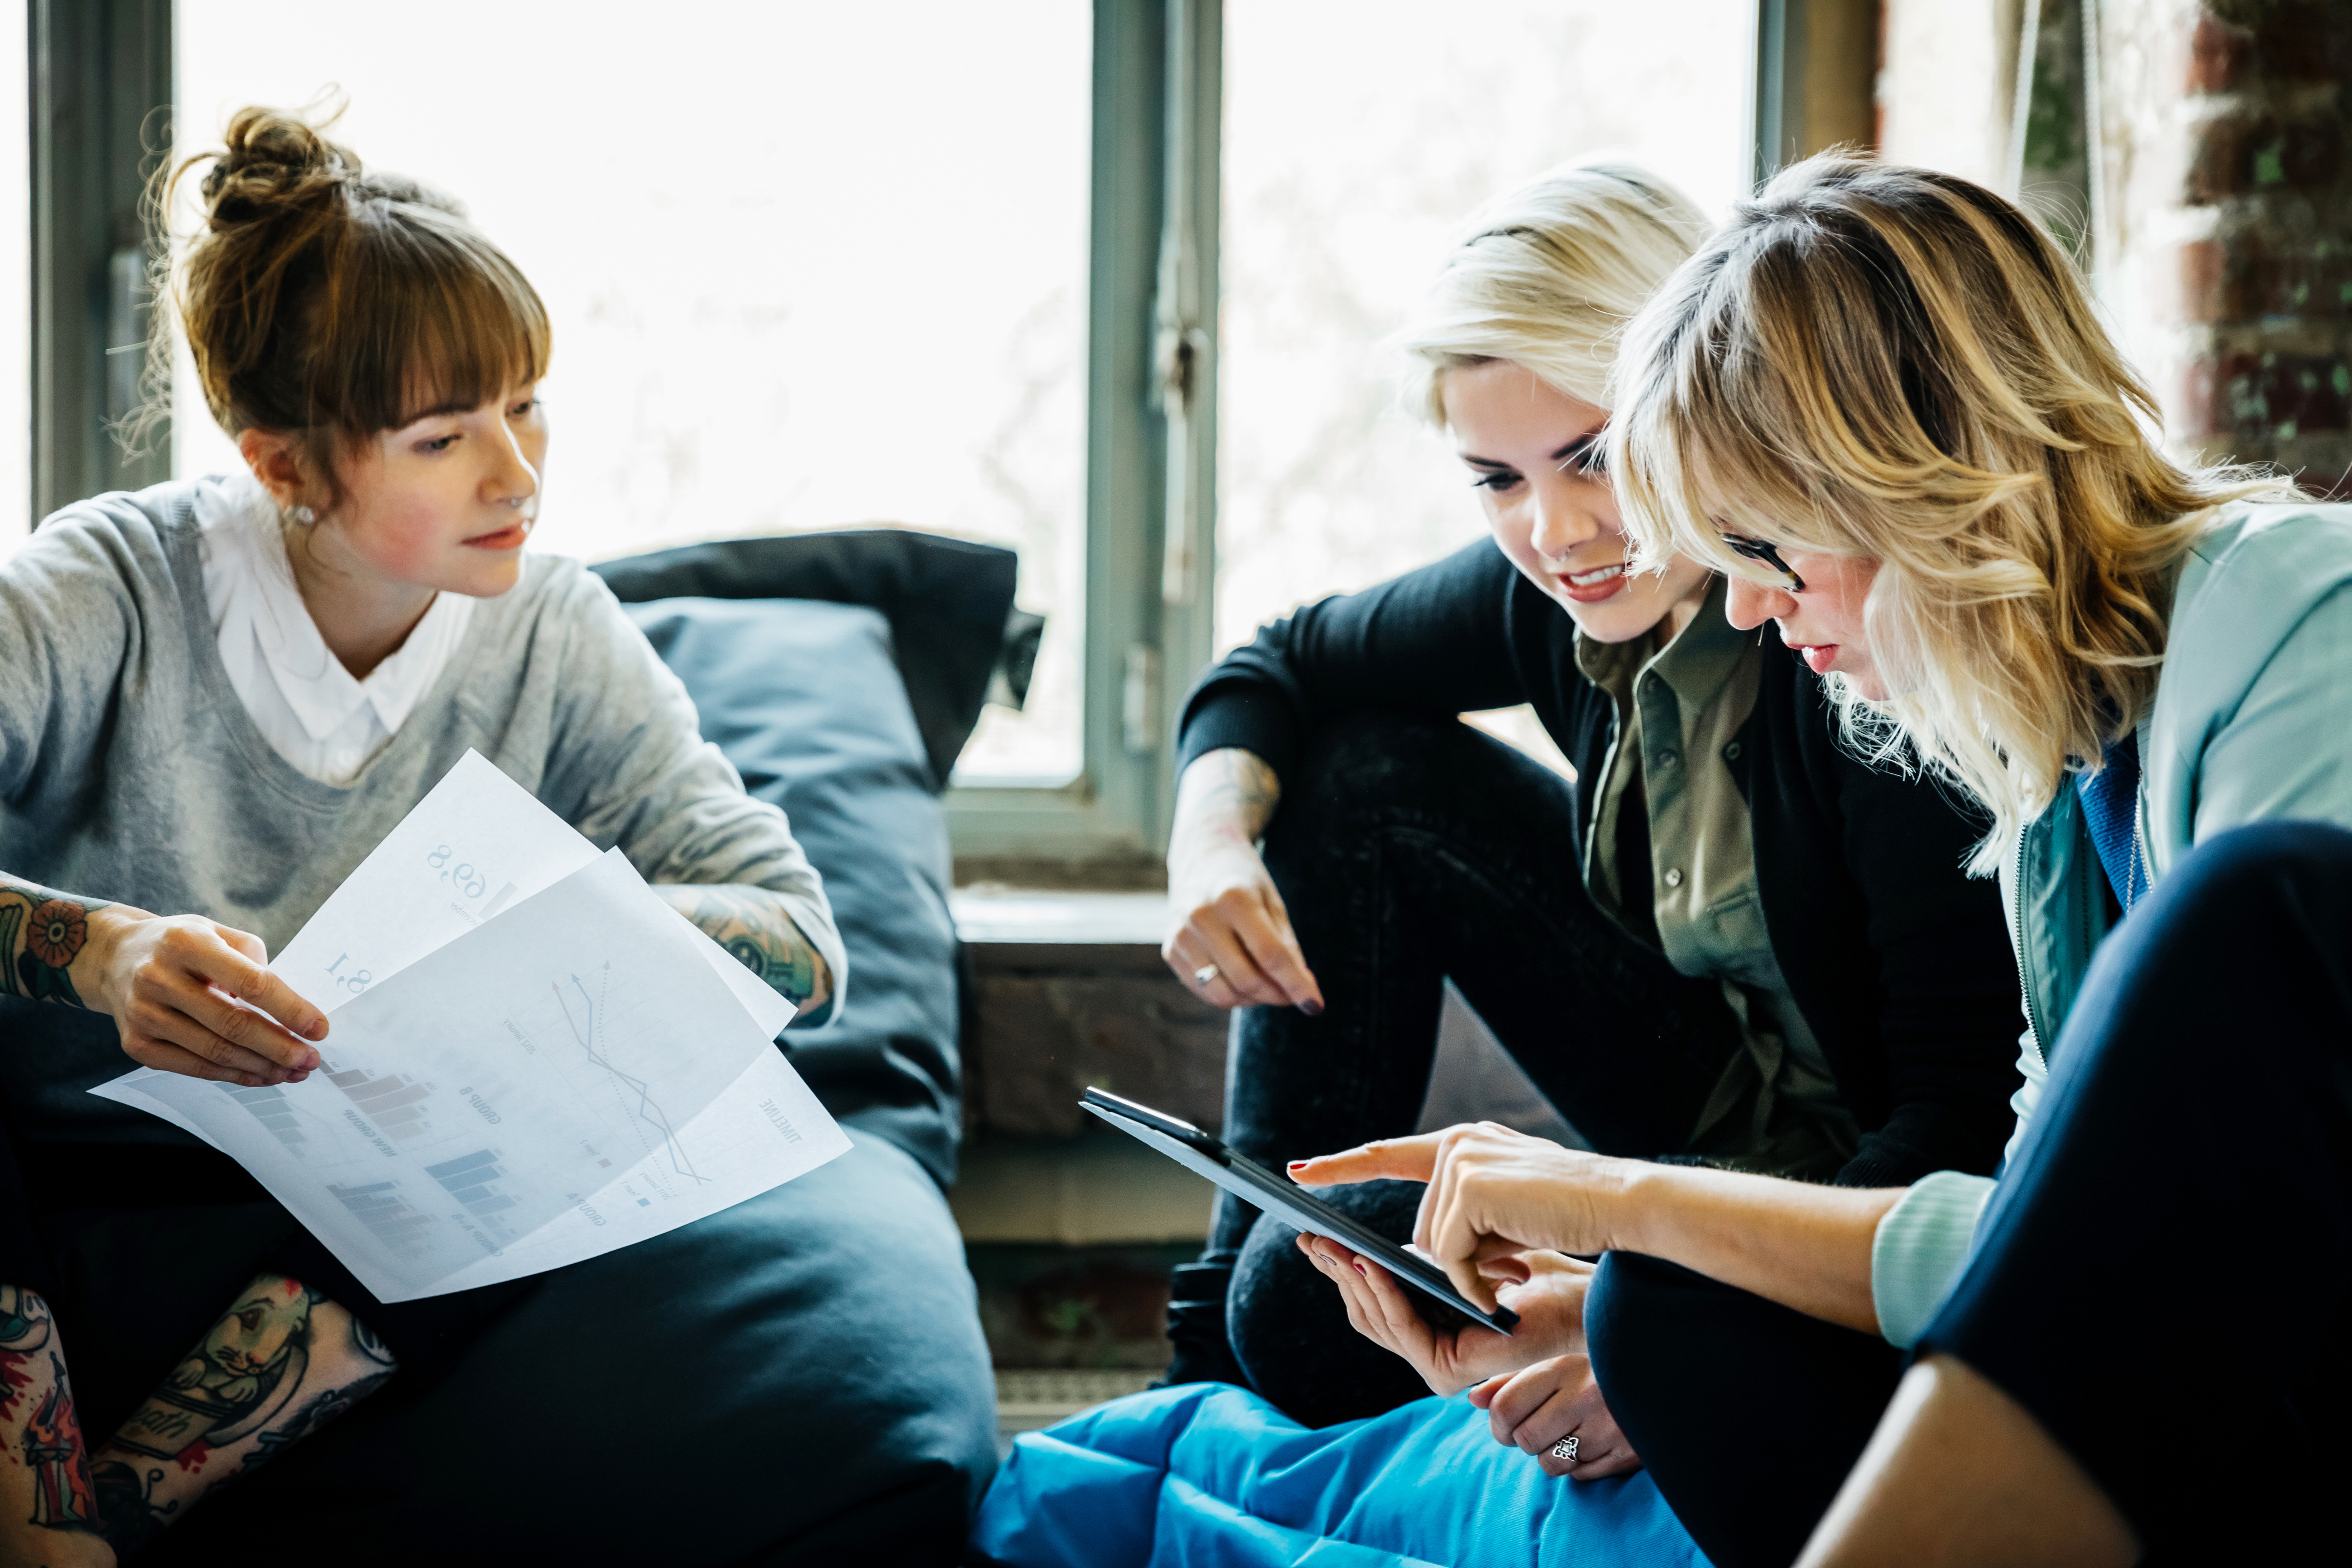 Geschäftsfrauen im Gespräch bei einem informellen Treffen | Quelle: Getty Images